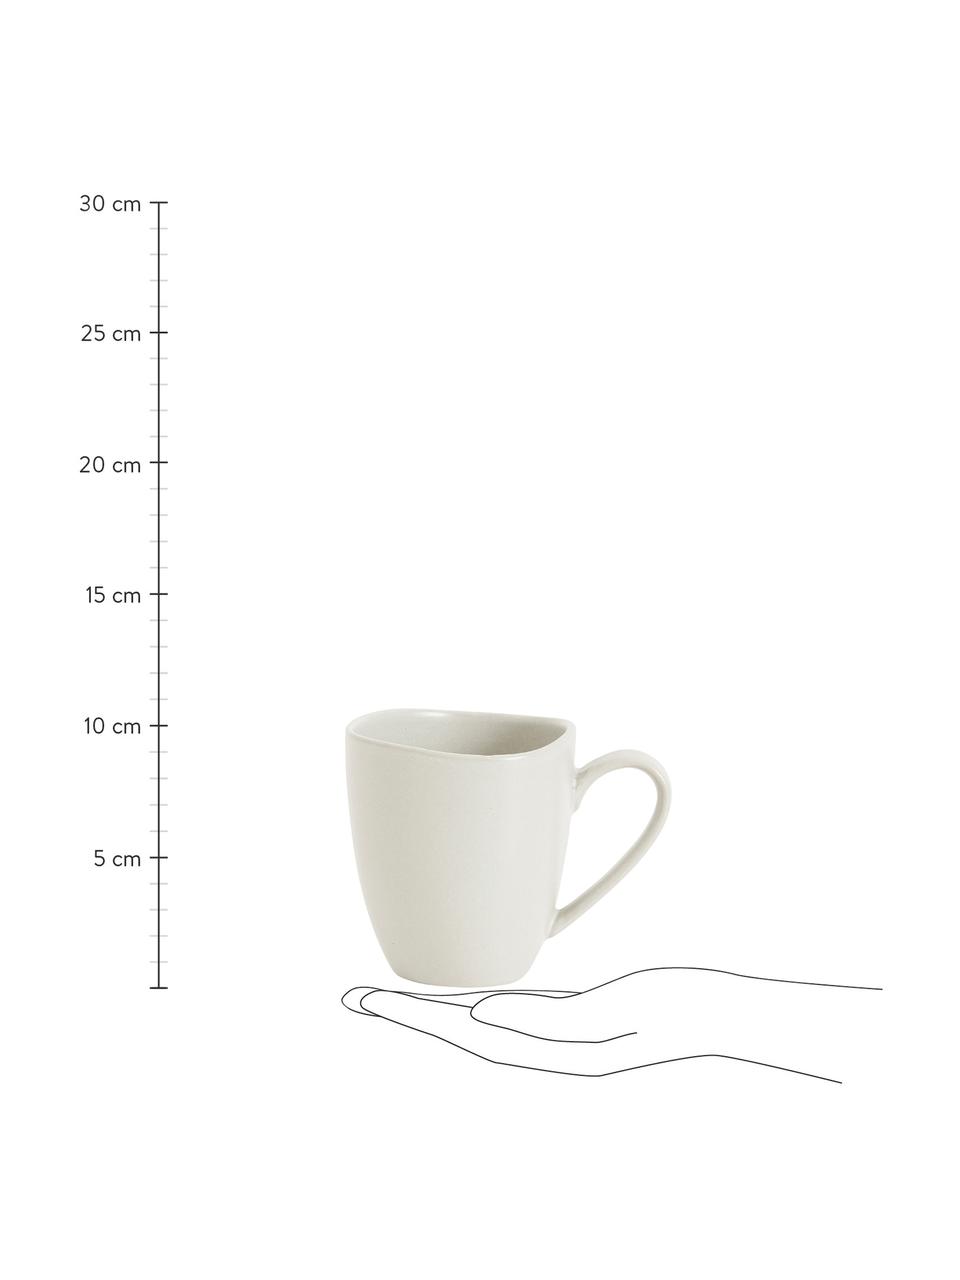 Steingut-Tassen Refine matt Weiß in organischer Form, 4 Stück, Steingut, Gebrochenes Weiß, Ø 9 x H 10 cm